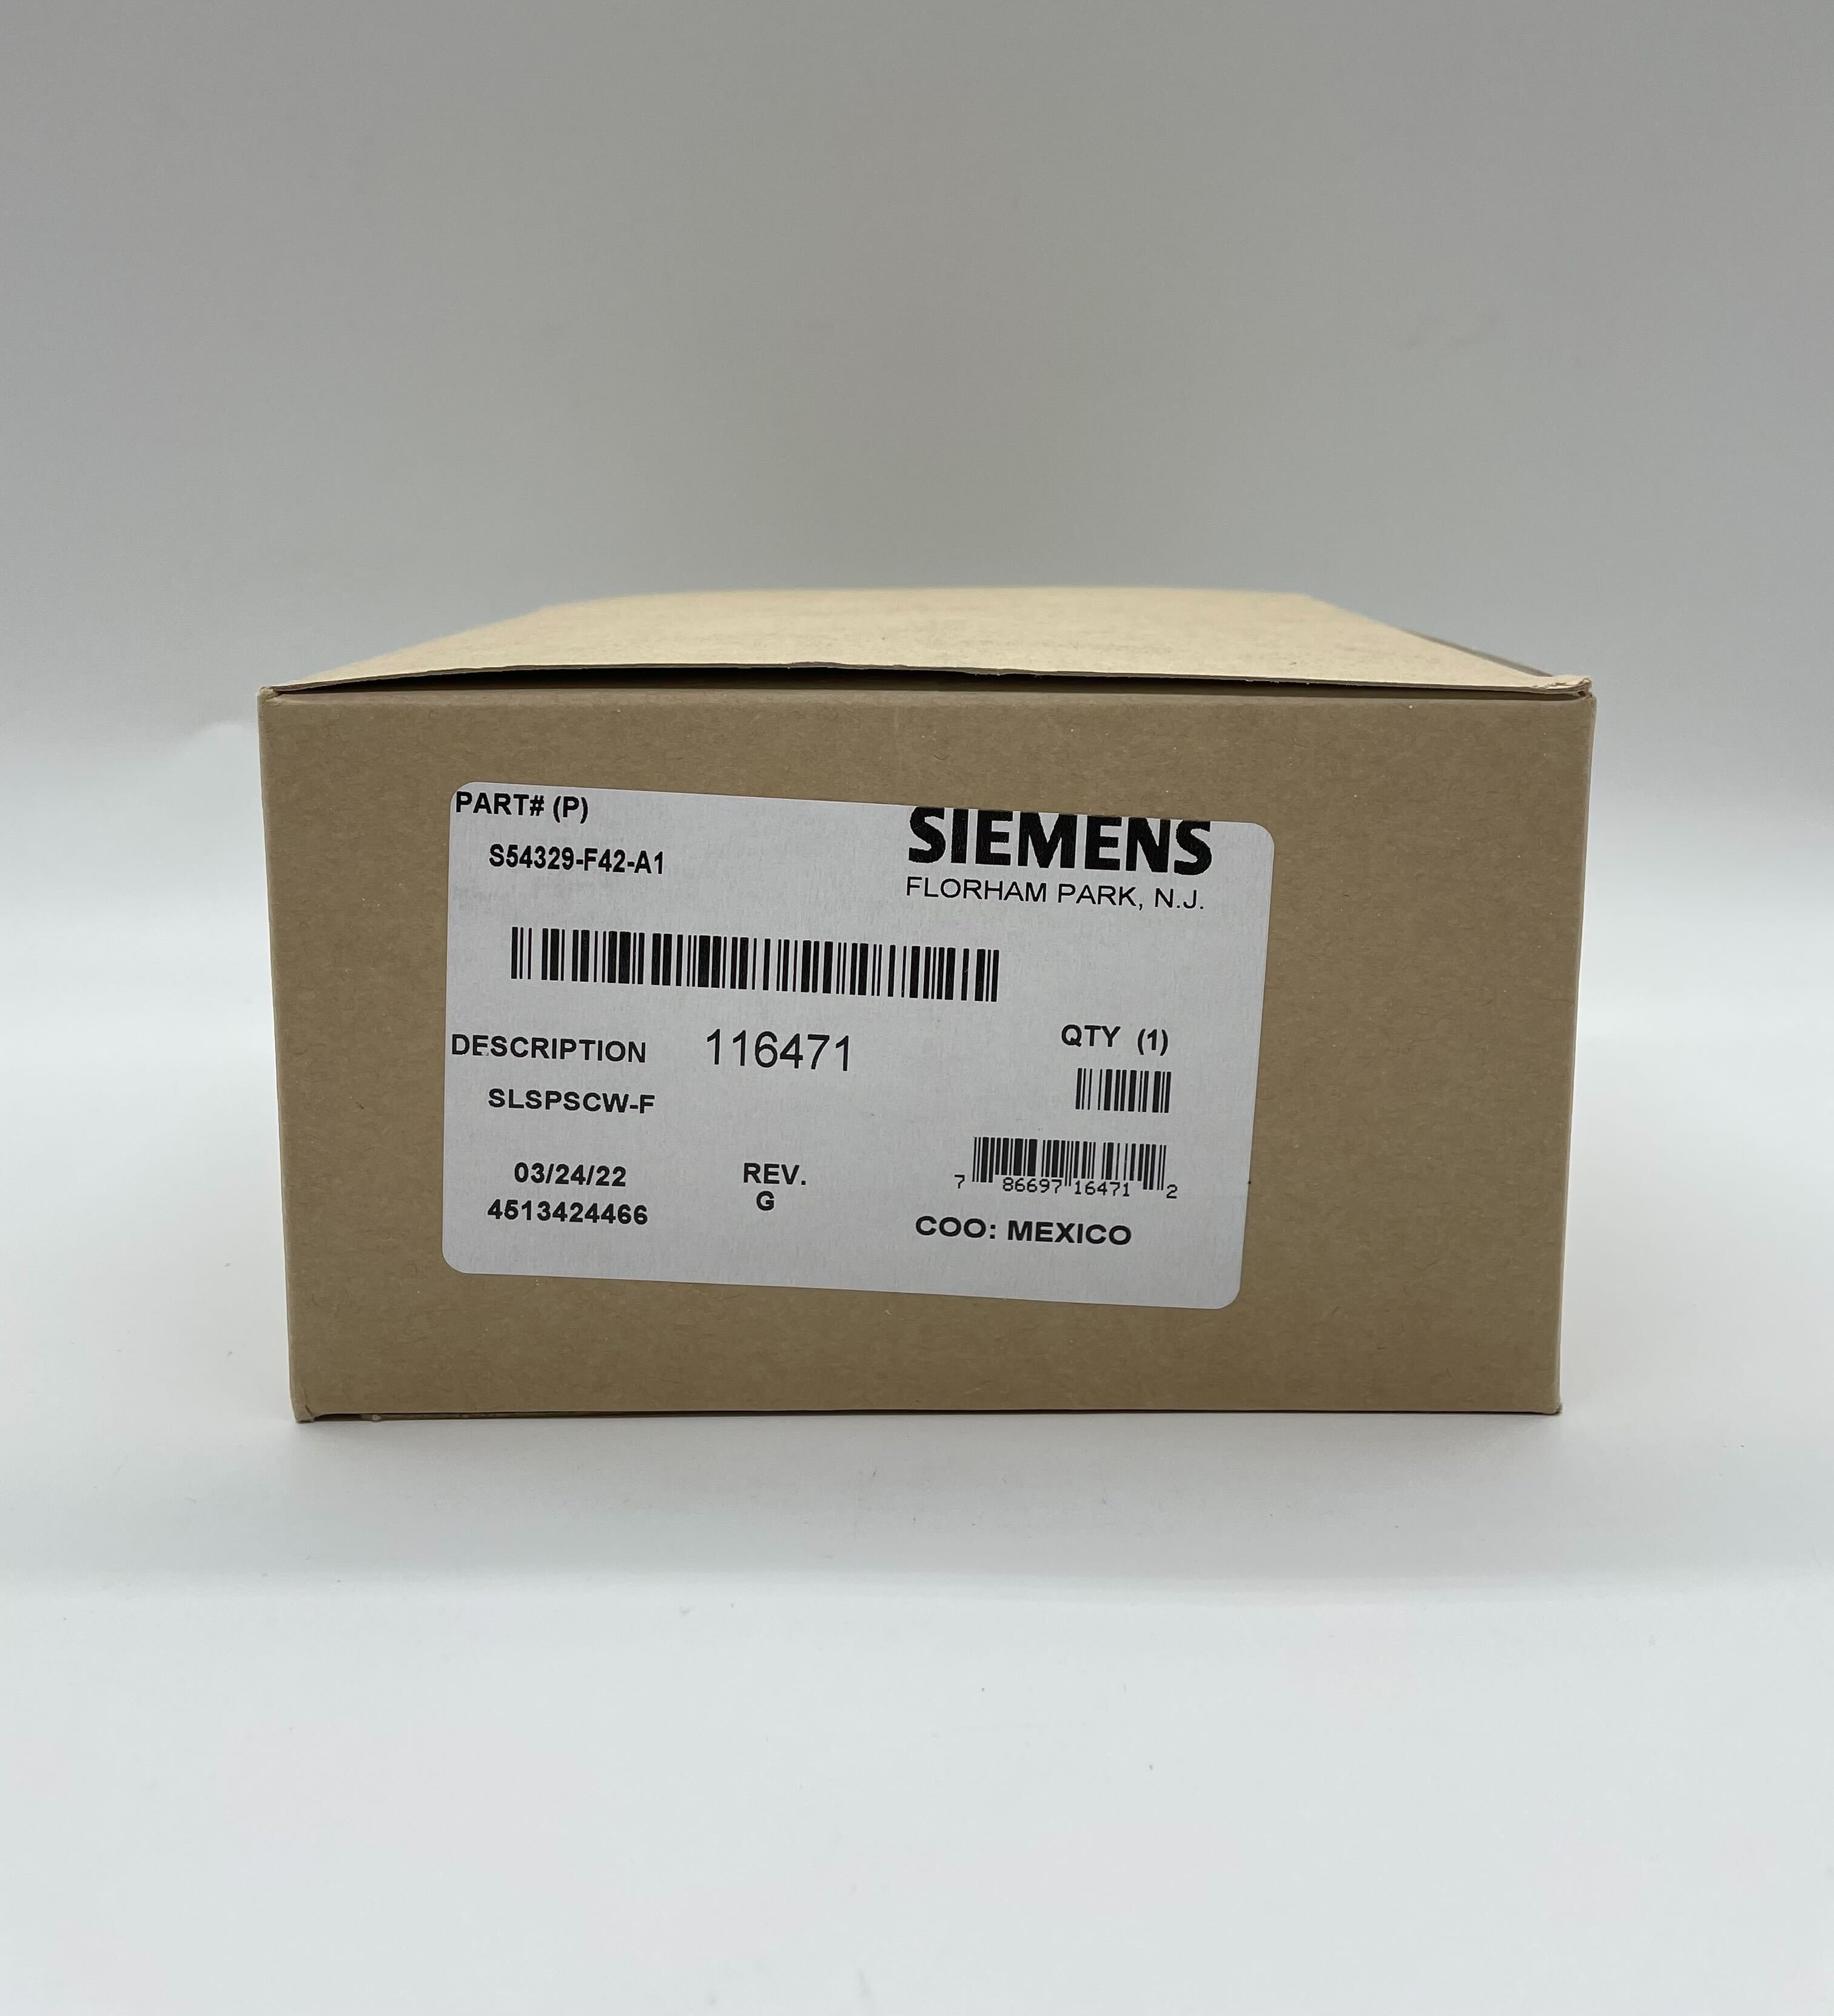 Siemens SLSPSCW-F